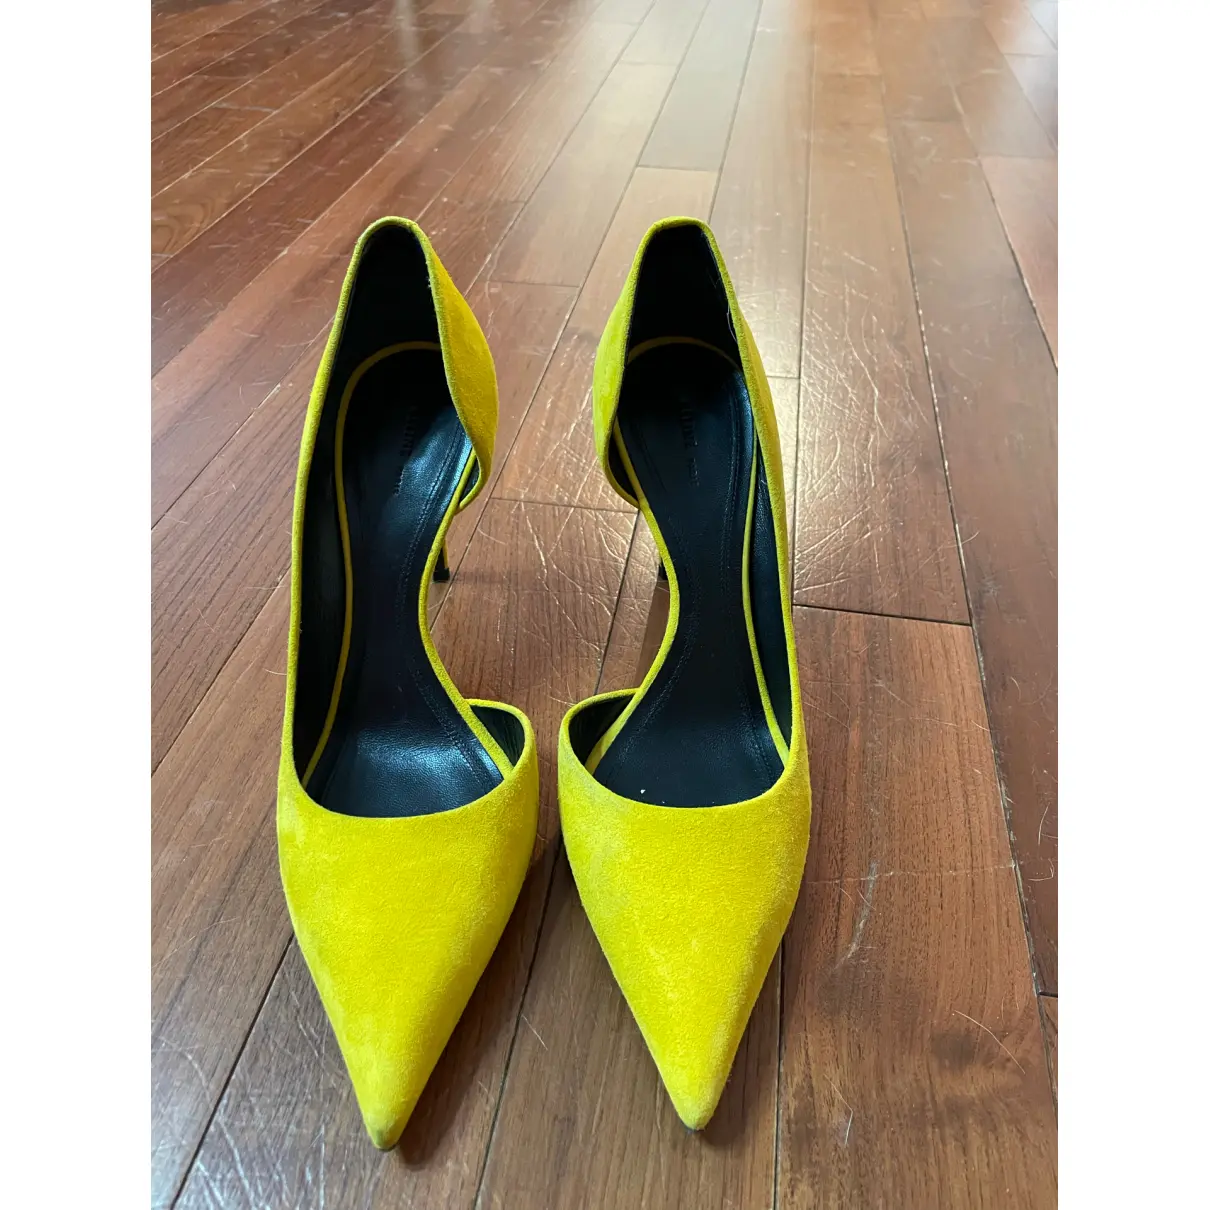 Buy Celine Sharp heels online